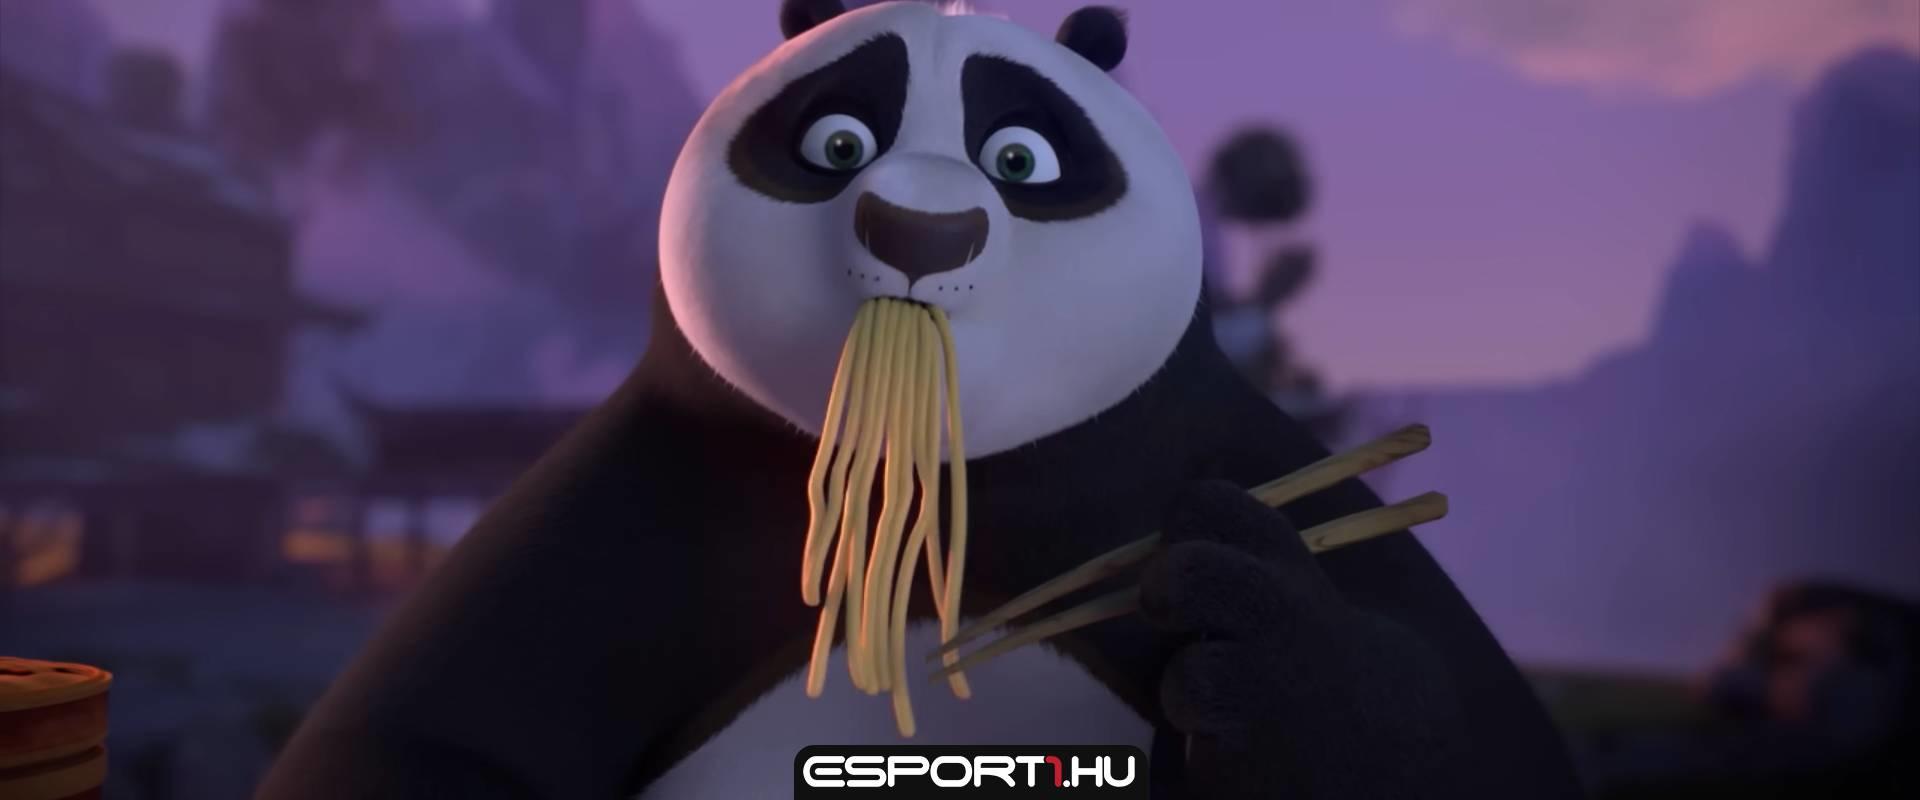 Sorozatként folytatódik a Kung Fu Panda a Netflixen, és befutott az első trailere is